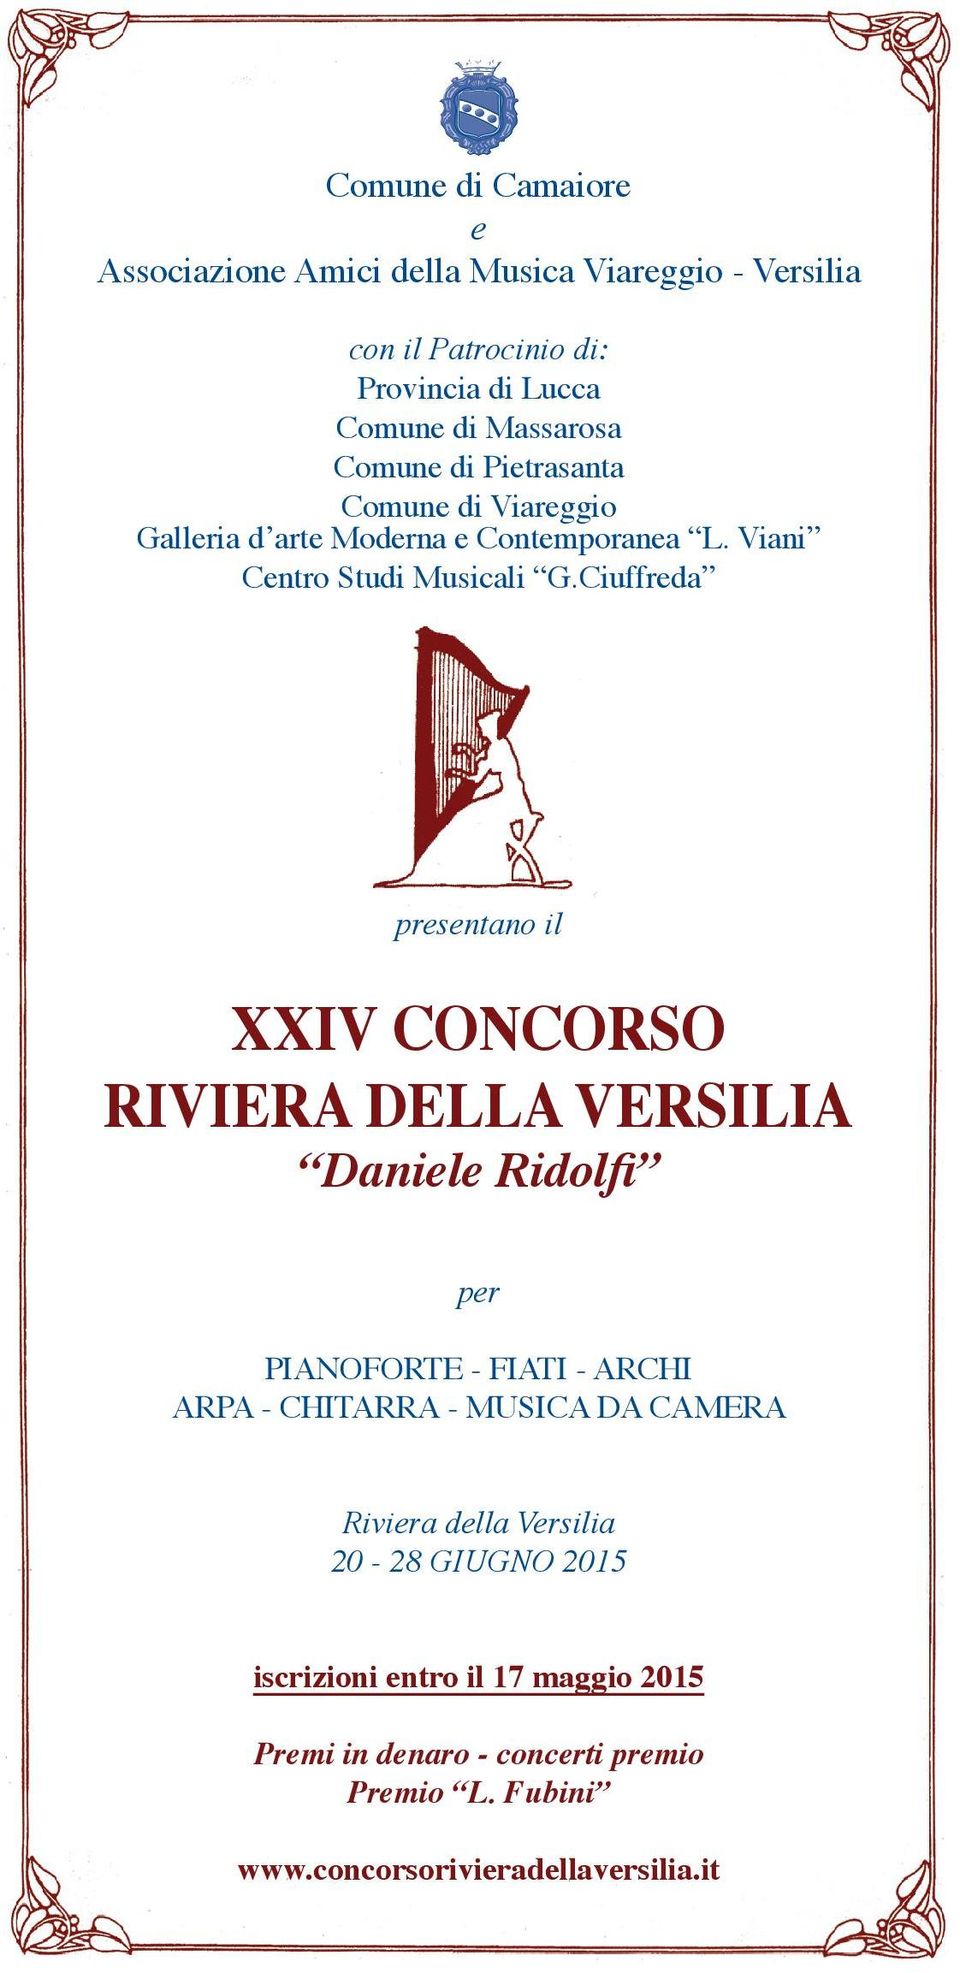 Ciuffreda presentano il XXIV CONCORSO RIVIERA DELLA VERSILIA Daniele Ridolfi per PIANOFORTE - FIATI - ARCHI ARPA - CHITARRA - MUSICA DA